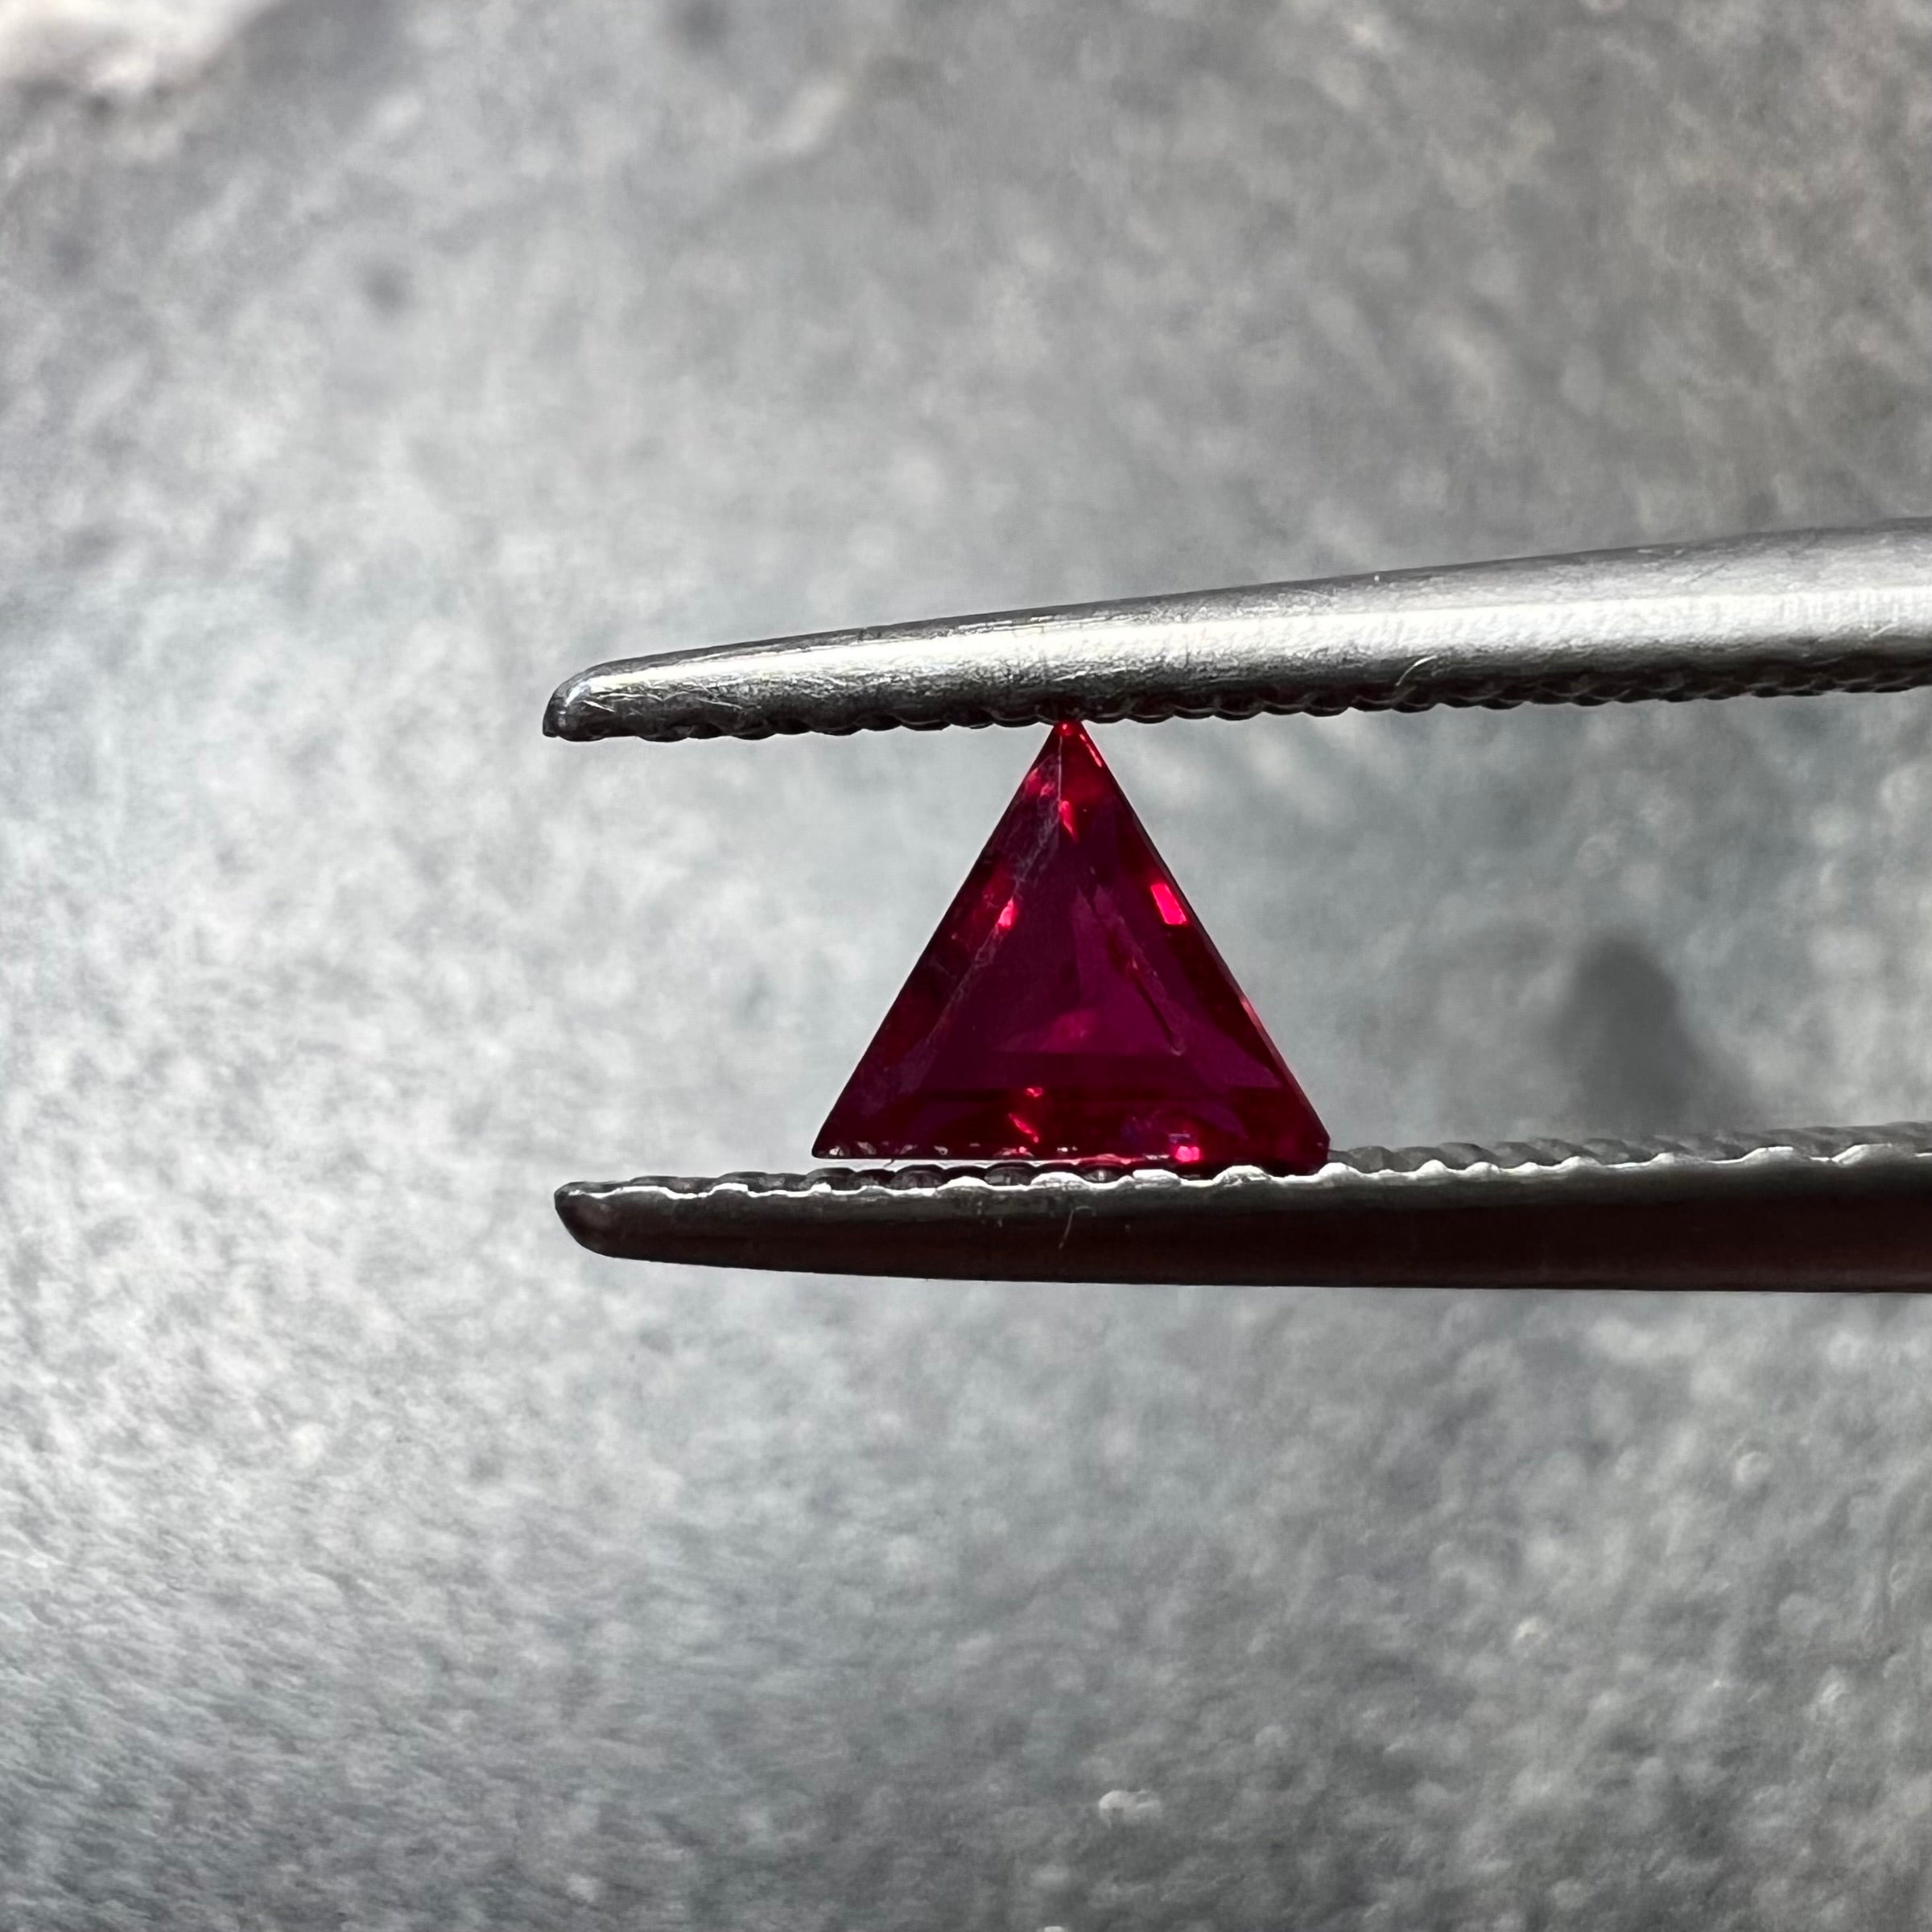 .31CT Loose Trillion Cut Ruby 4.11x4.16x2.12mm Earth mined Gemstone